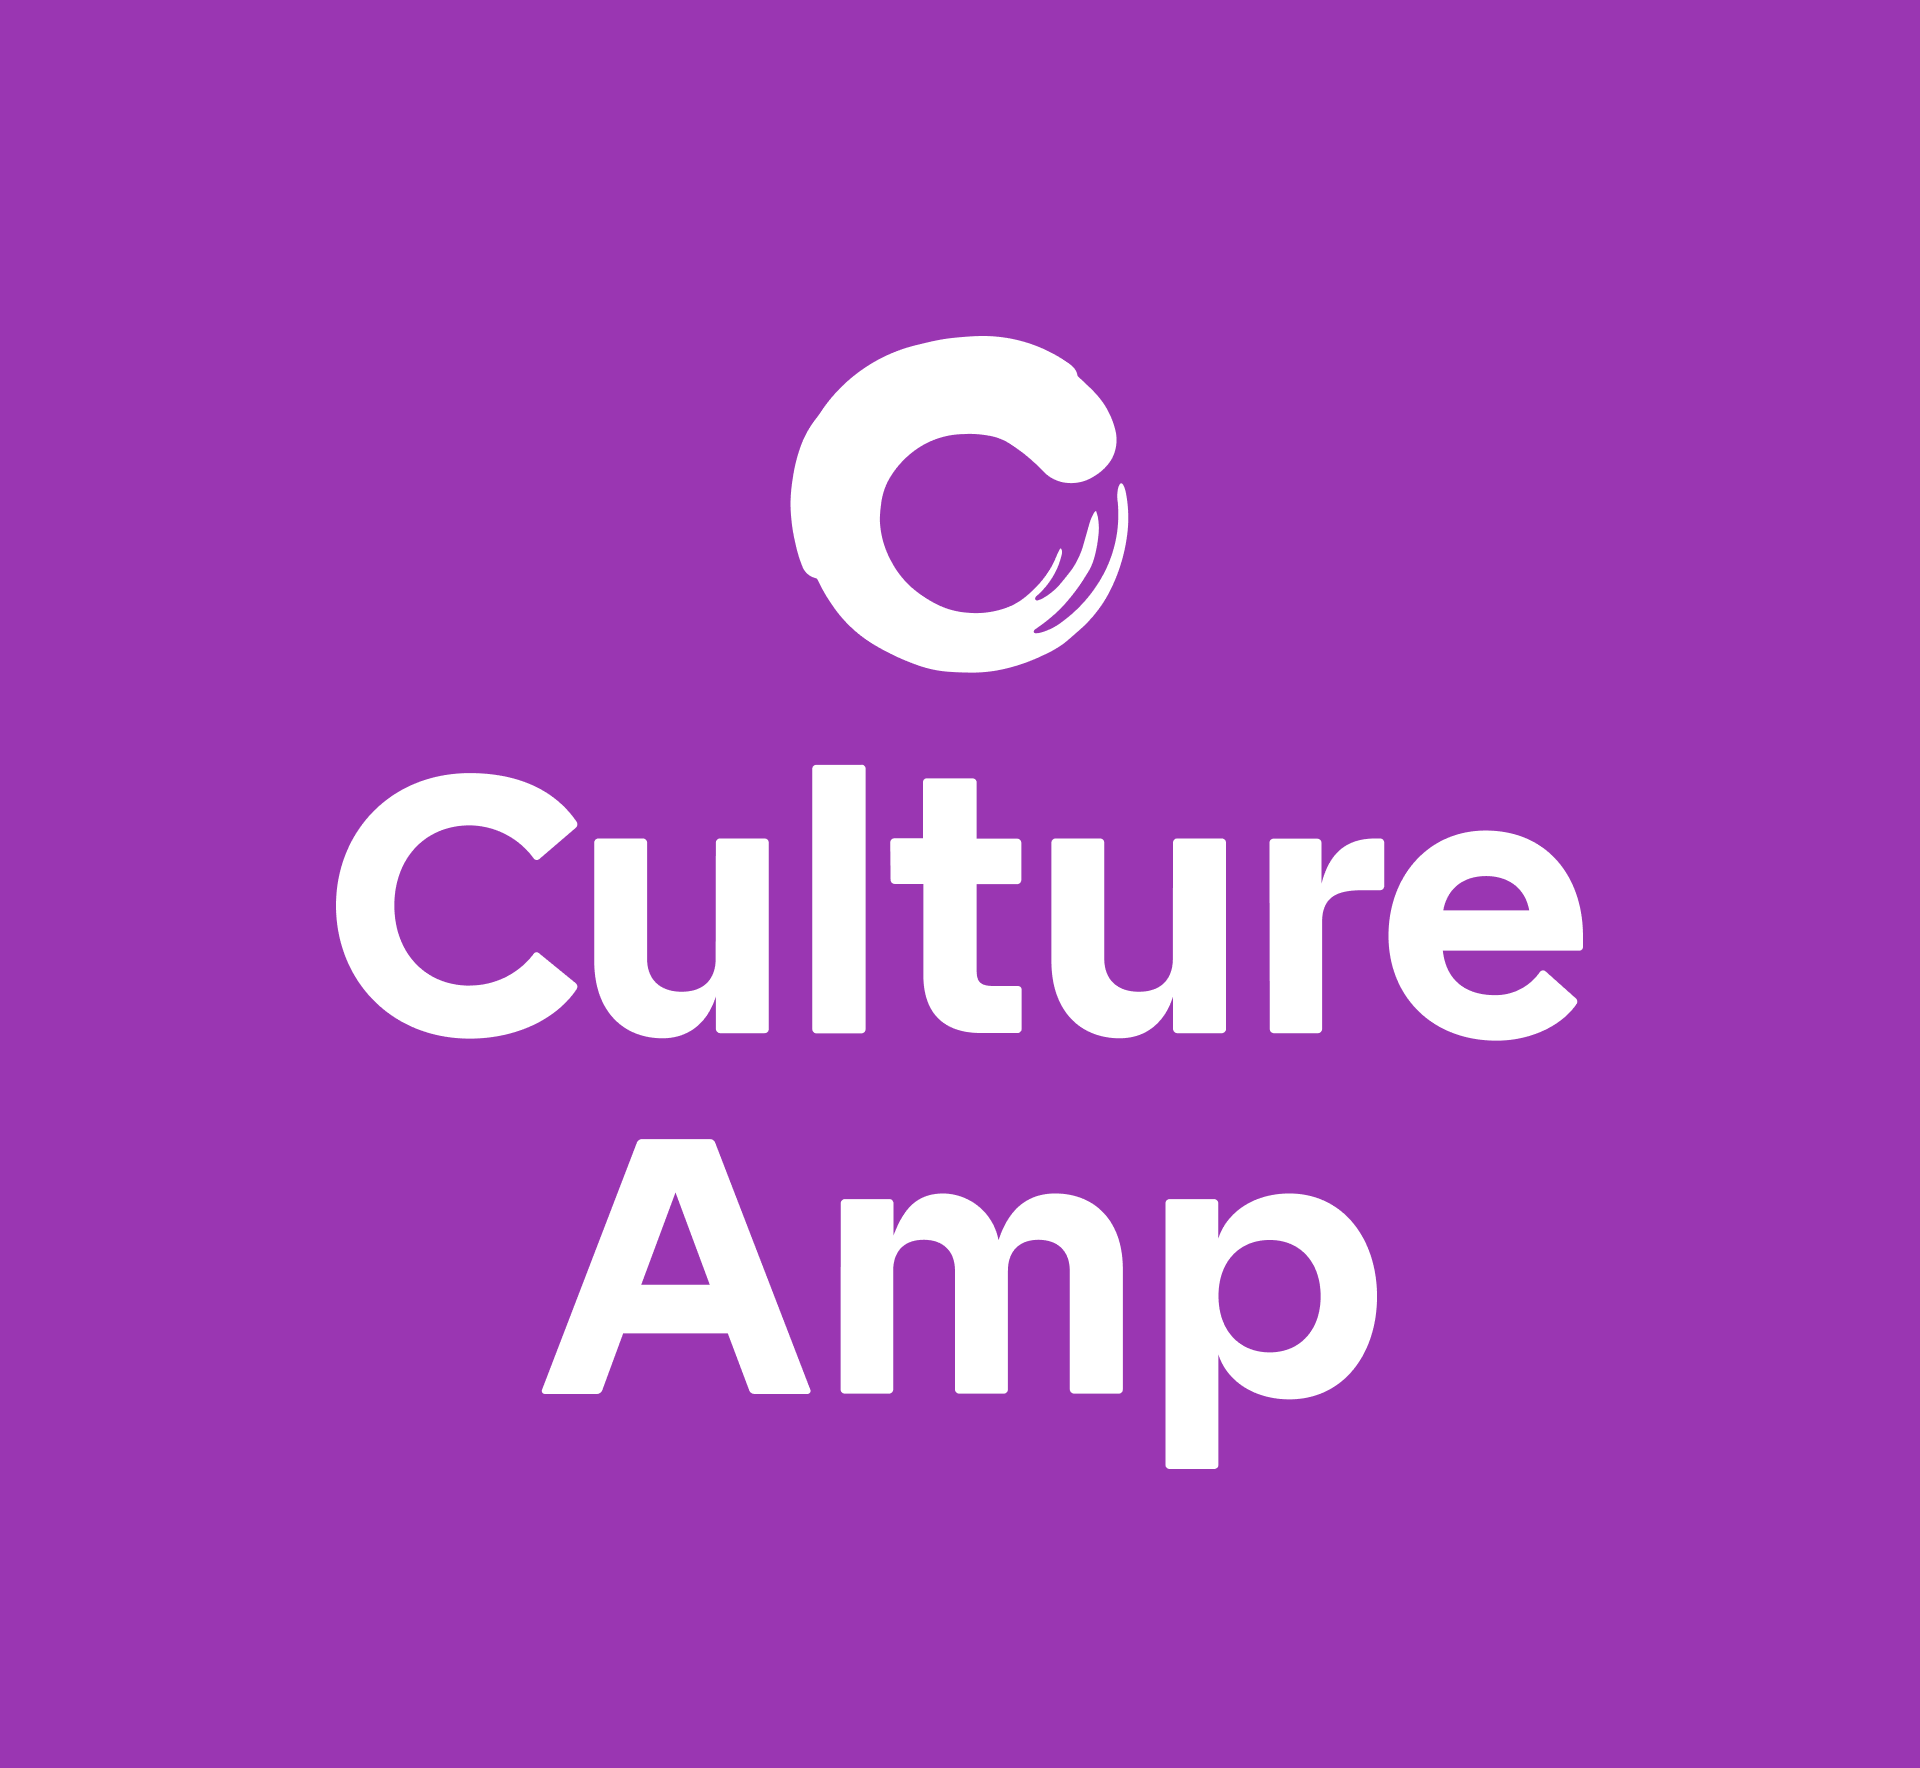 culture amp survey